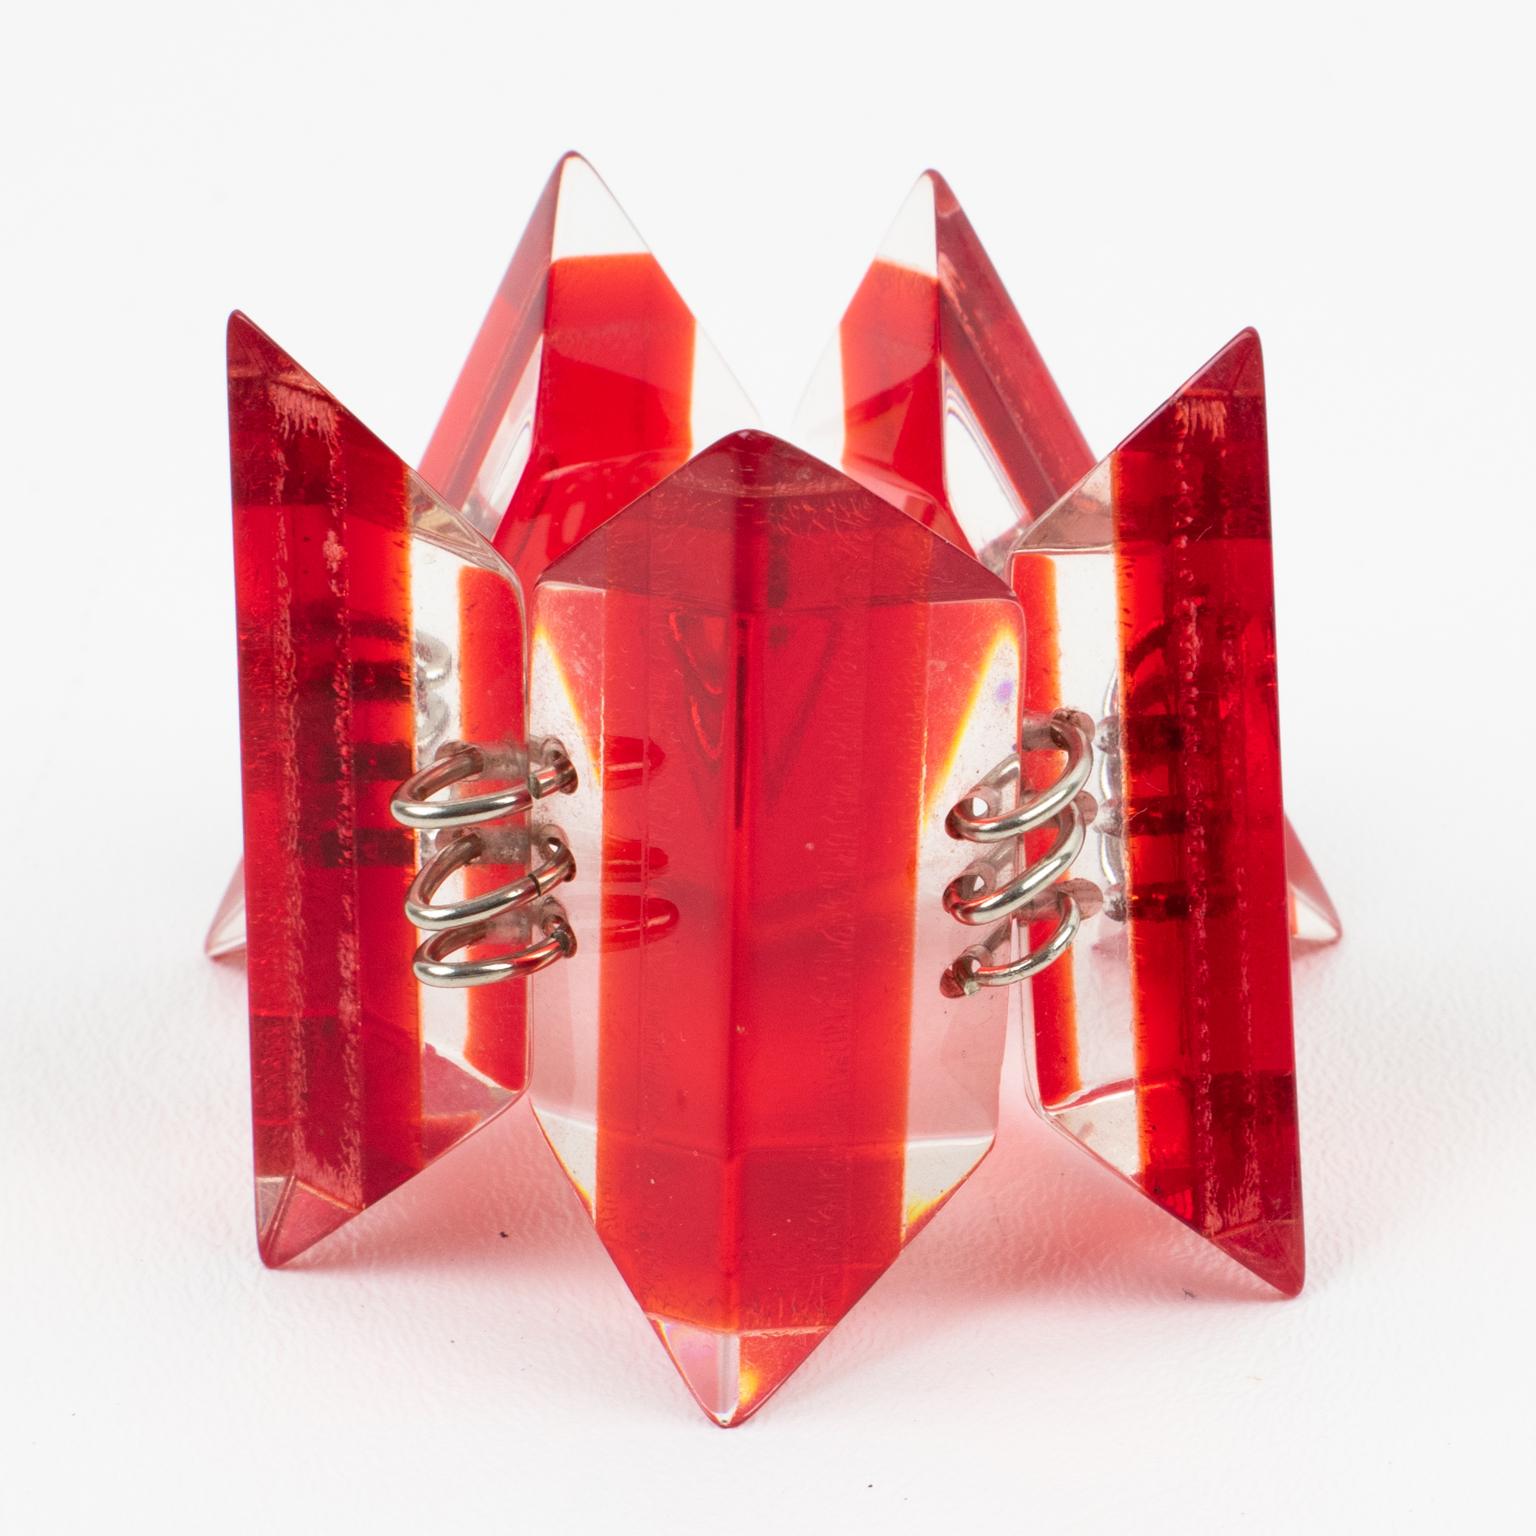 Dieses attraktive Gliederarmband aus massivem Lucite hat die Form eines geometrischen Eiswürfels in laminierter transparenter und leuchtend roter Farbe mit versilberten Metallbeschlägen. Es gibt keine sichtbare Herstellermarke.
Das Armband ist in